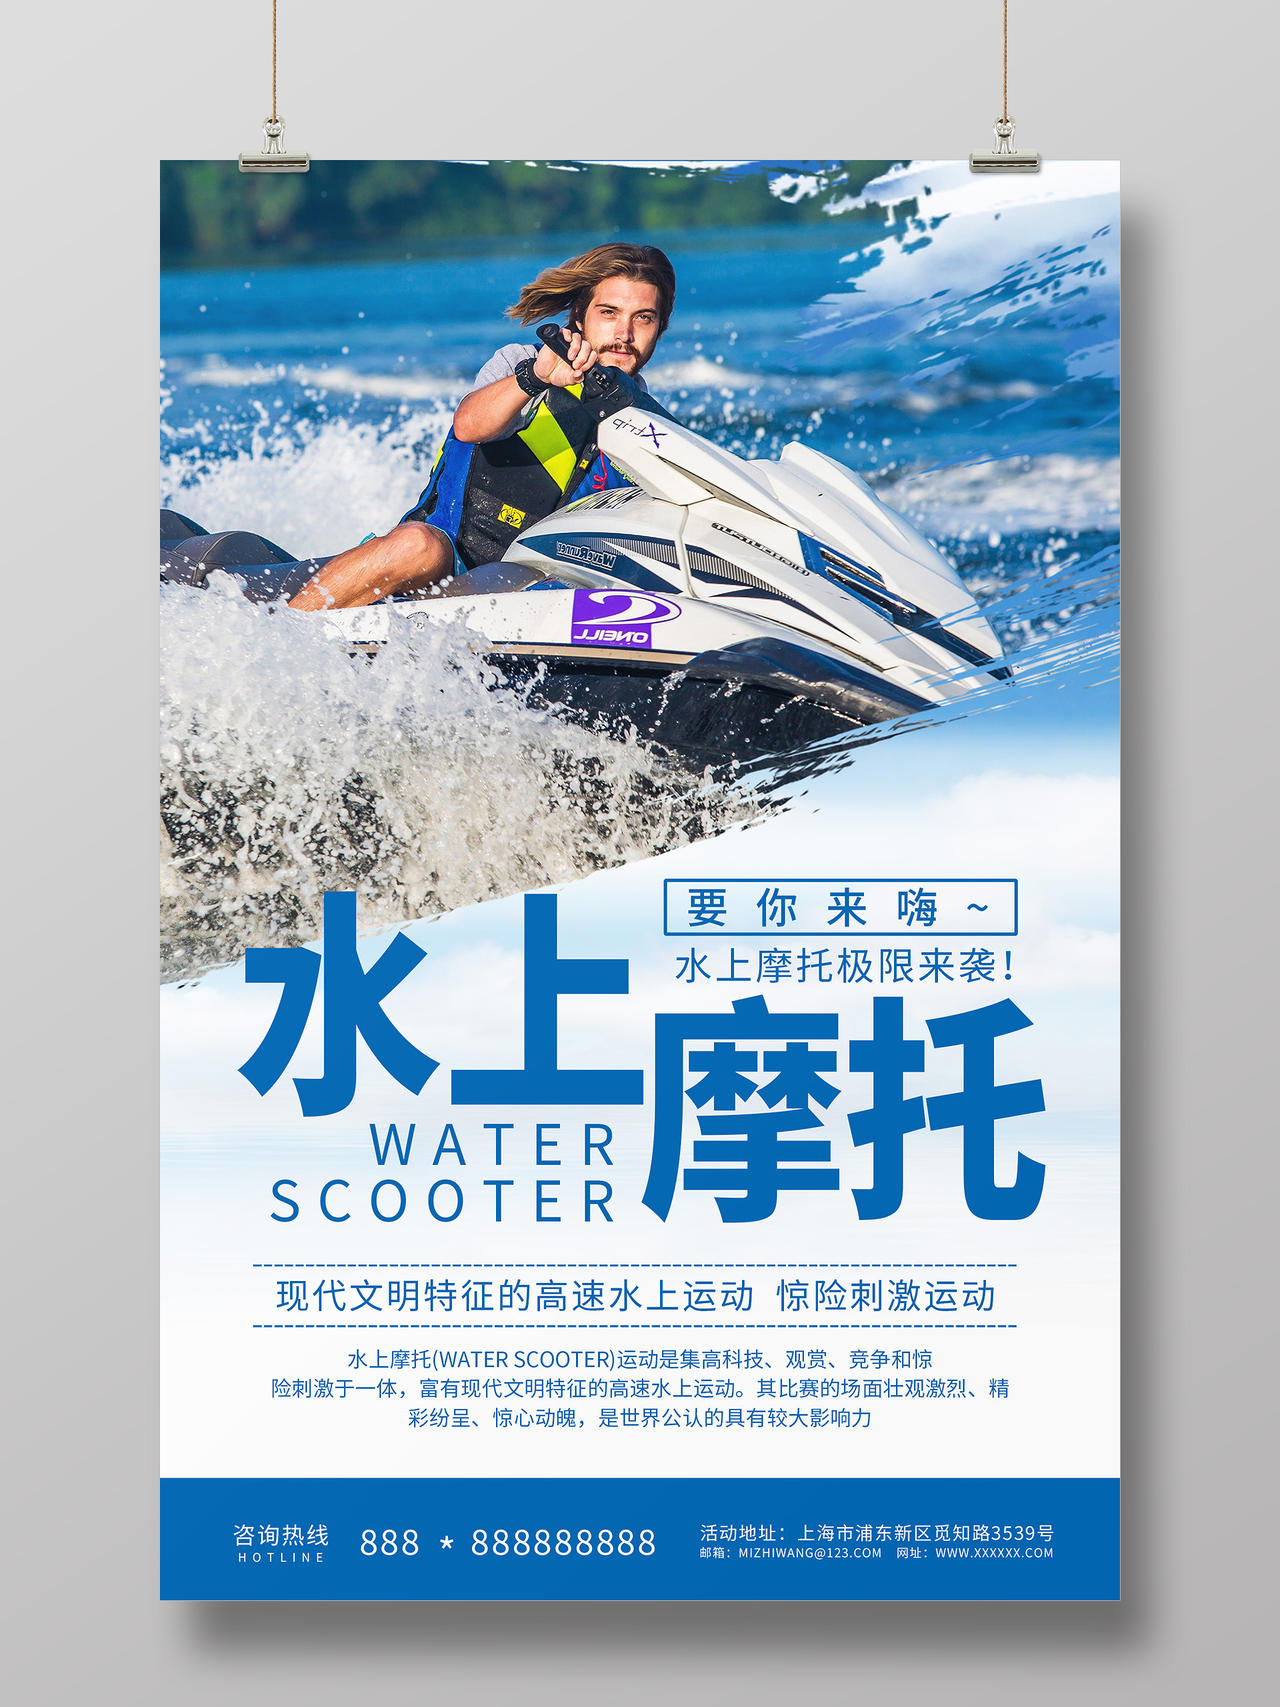 简约大气蓝色系水上摩托极限运动宣传海报